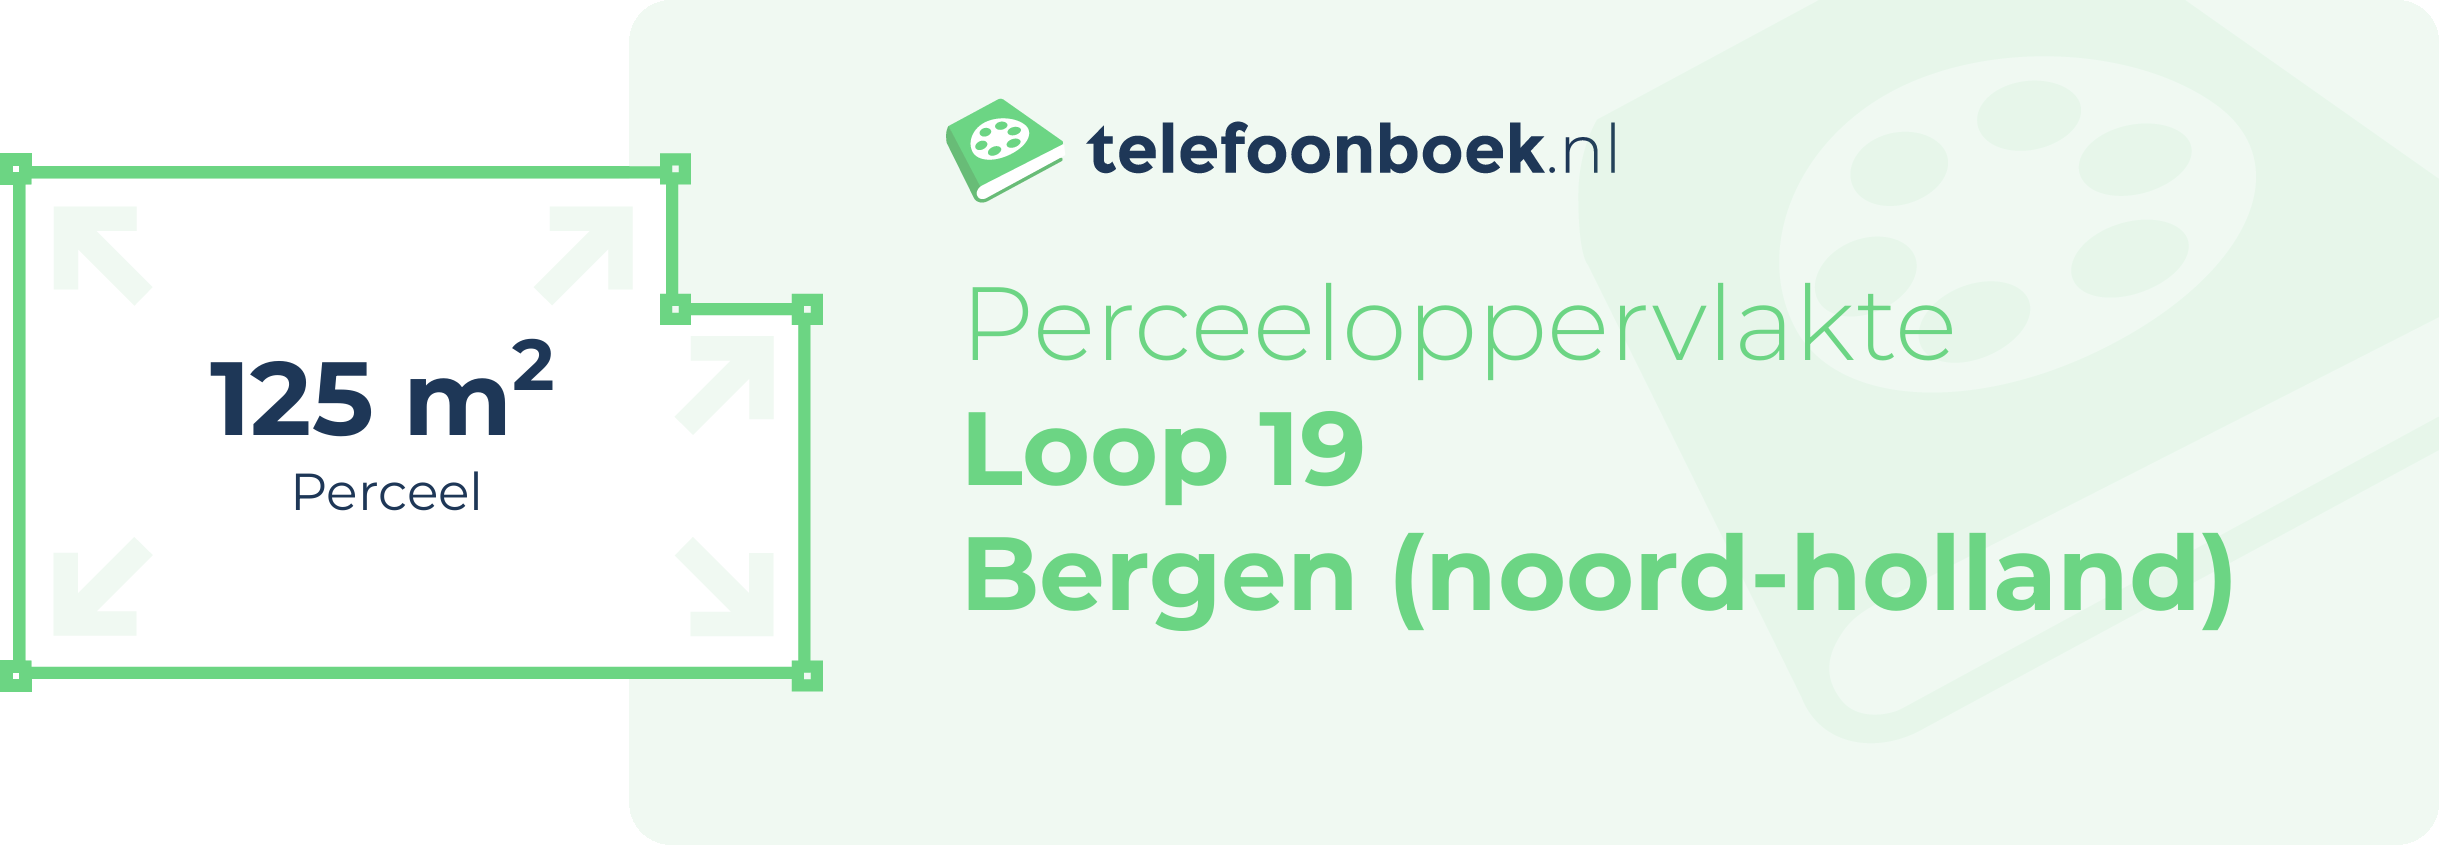 Perceeloppervlakte Loop 19 Bergen (Noord-Holland)